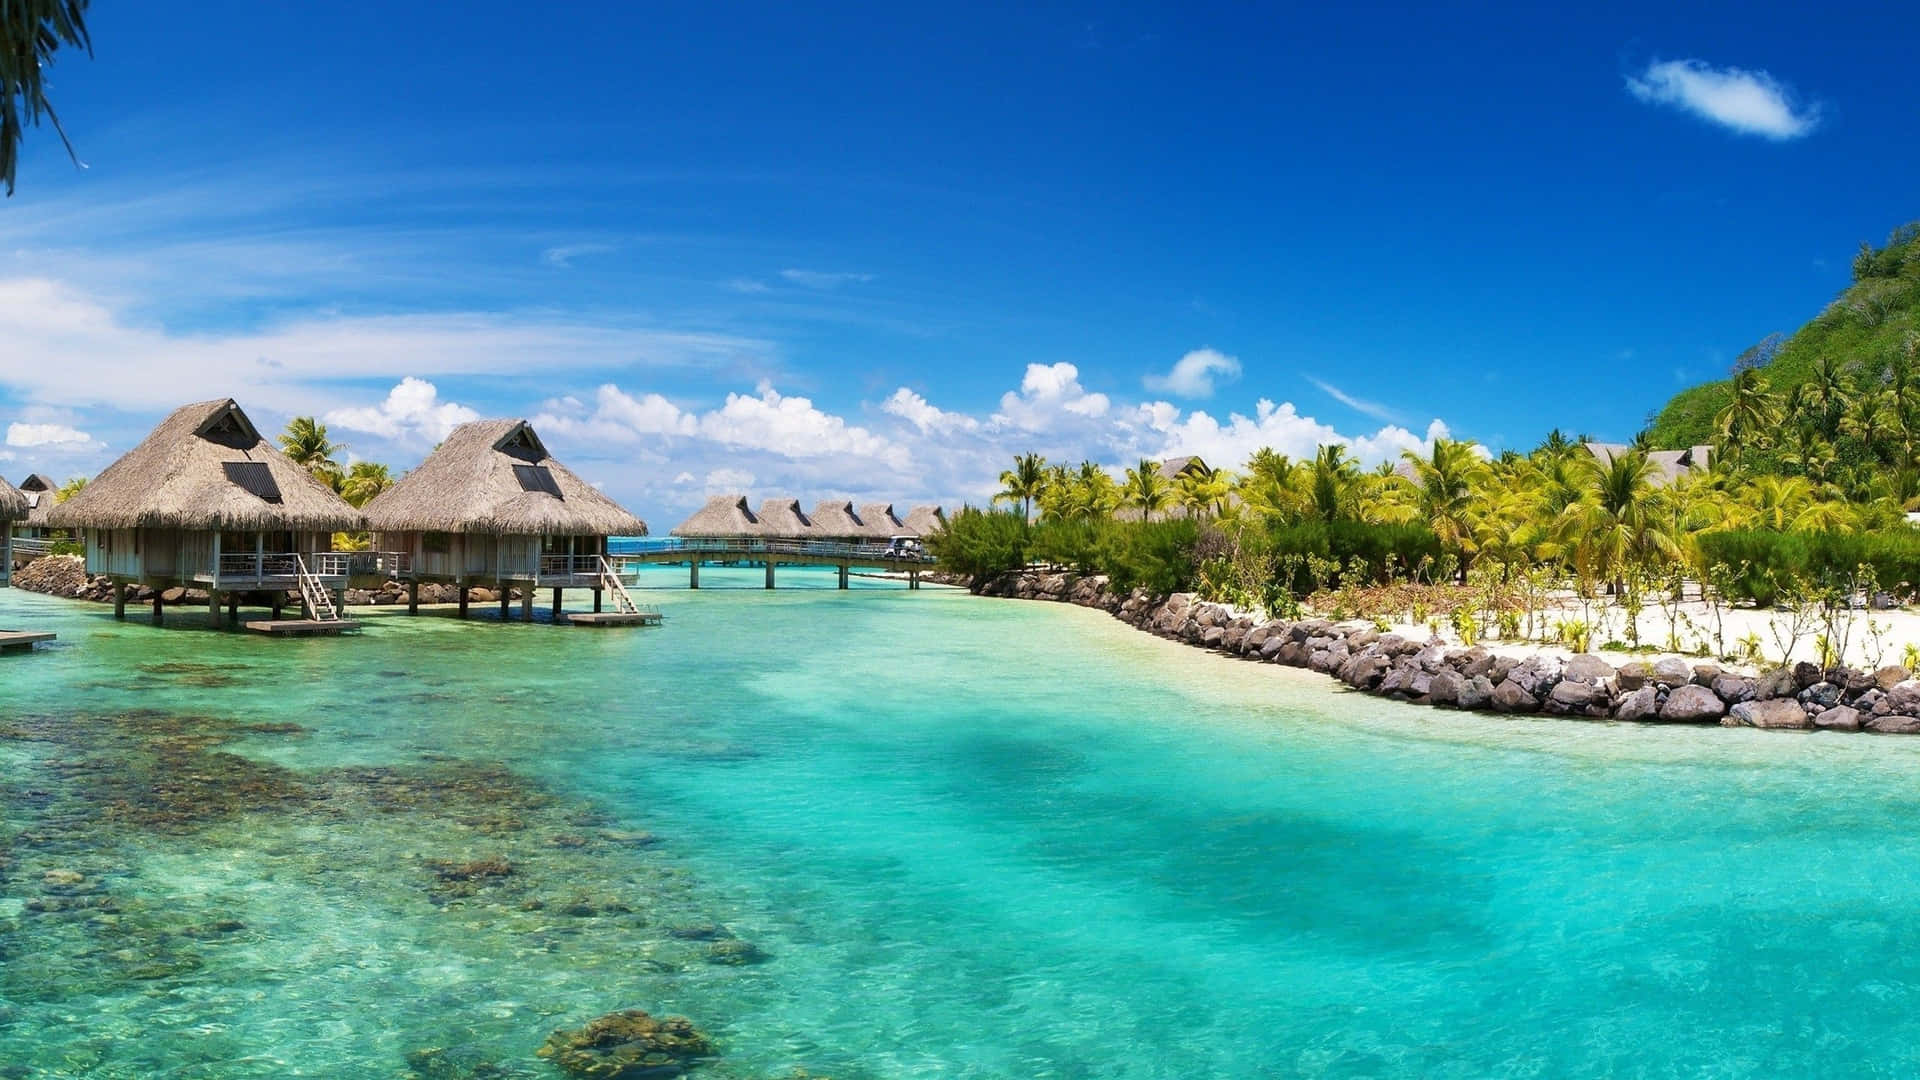 Sun-soaked vacation in the stunning island of Bora Bora